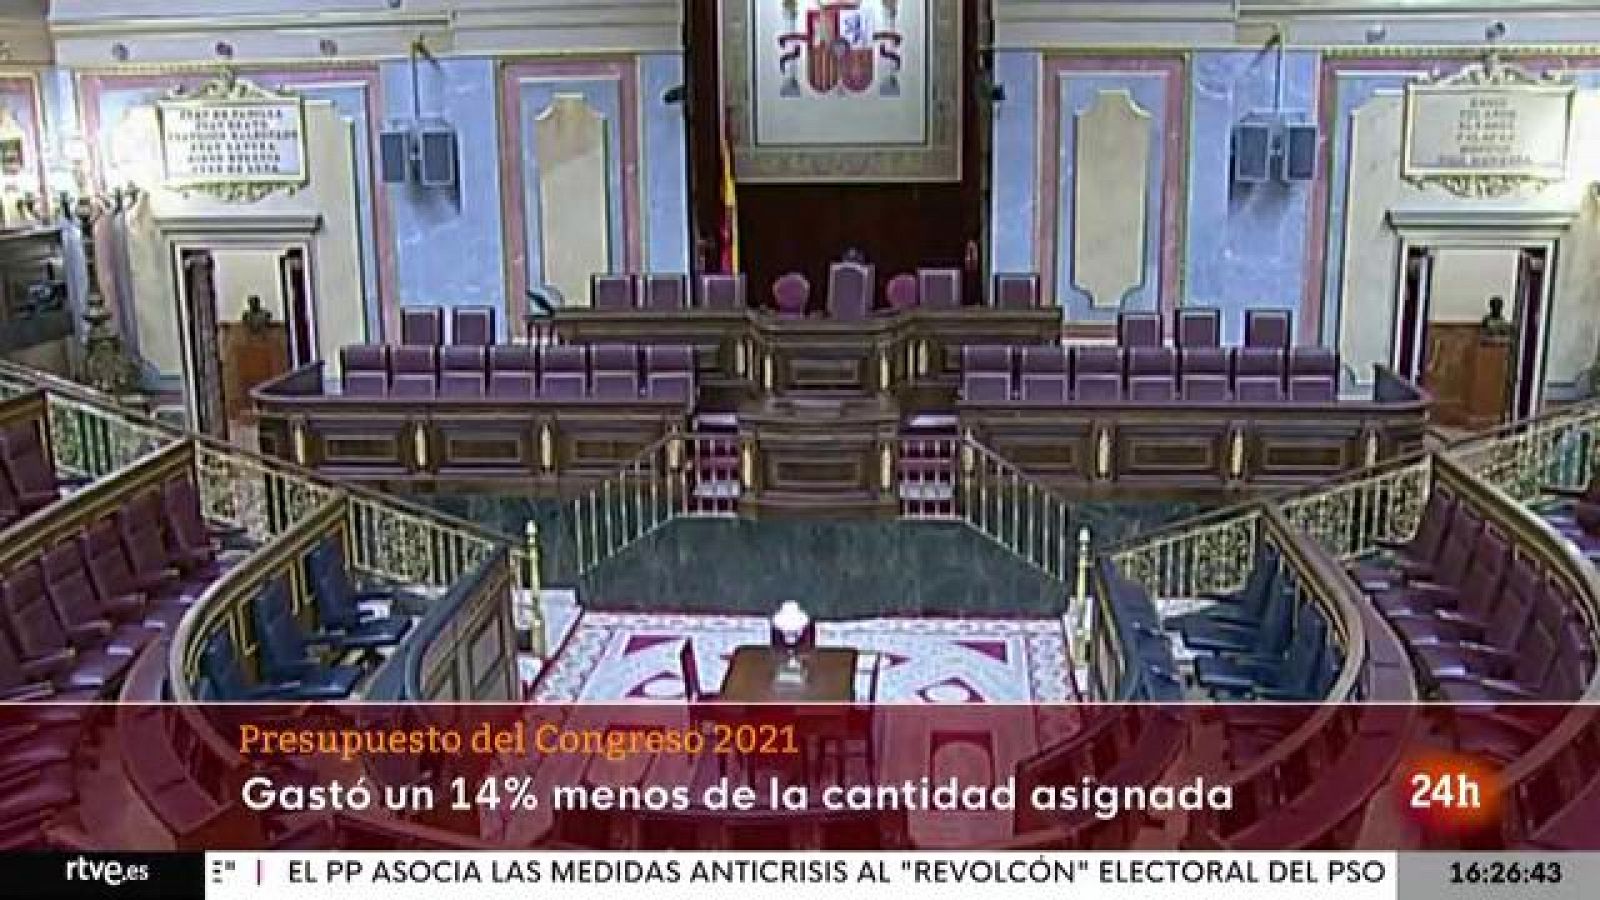 Parlamento - Conoce el Parlamento - El Congreso ahorra presupuesto - 25/06/2022